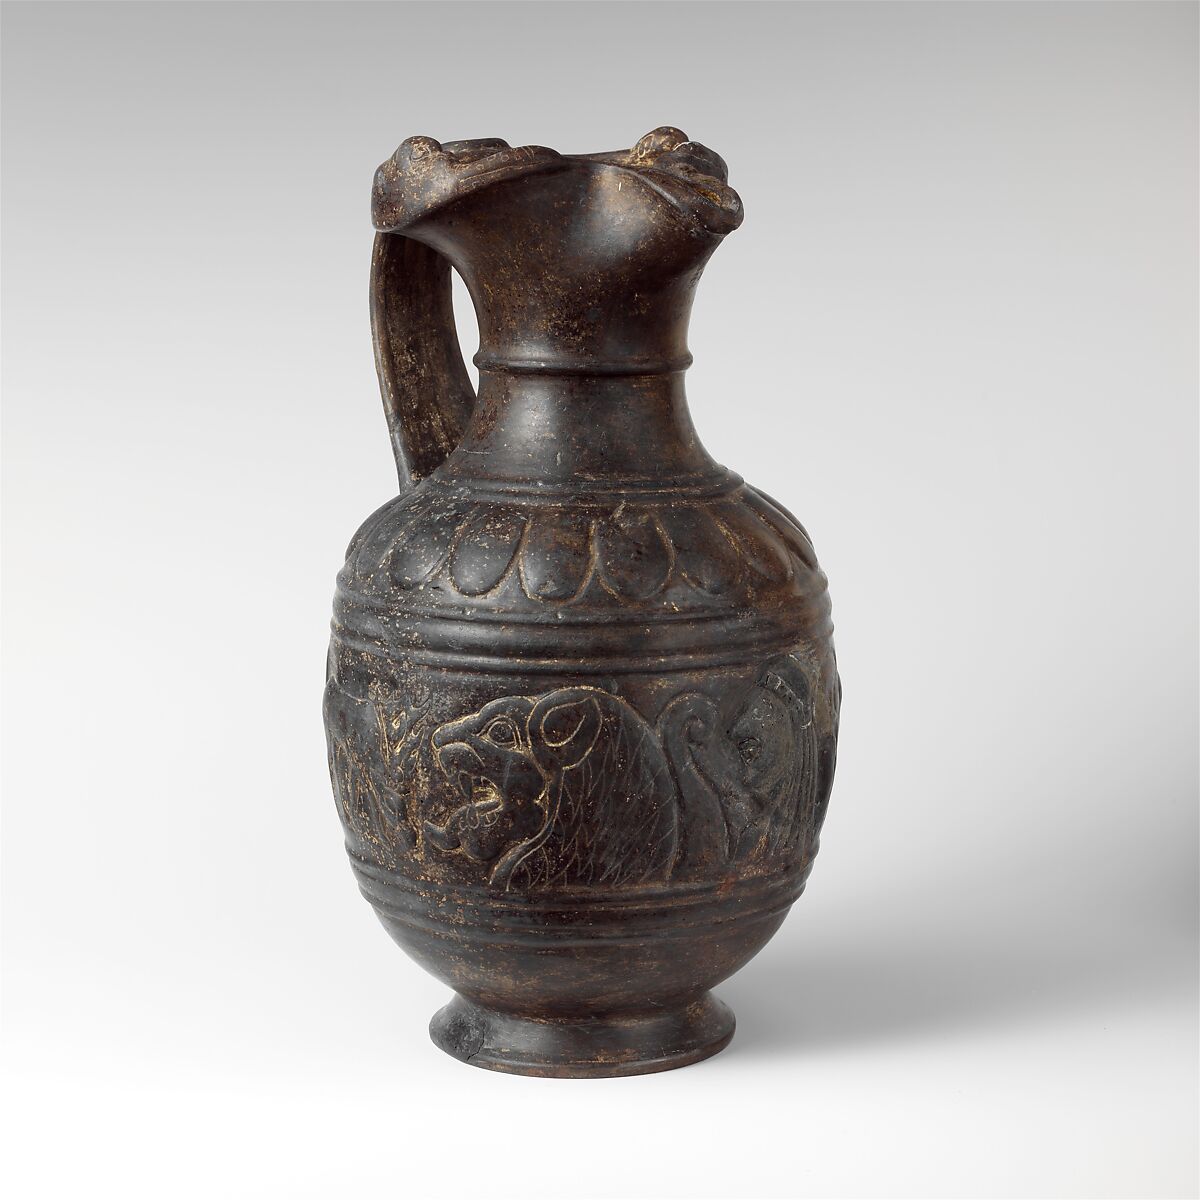 Terracotta oinochoe (jug), Terracotta, Etruscan 